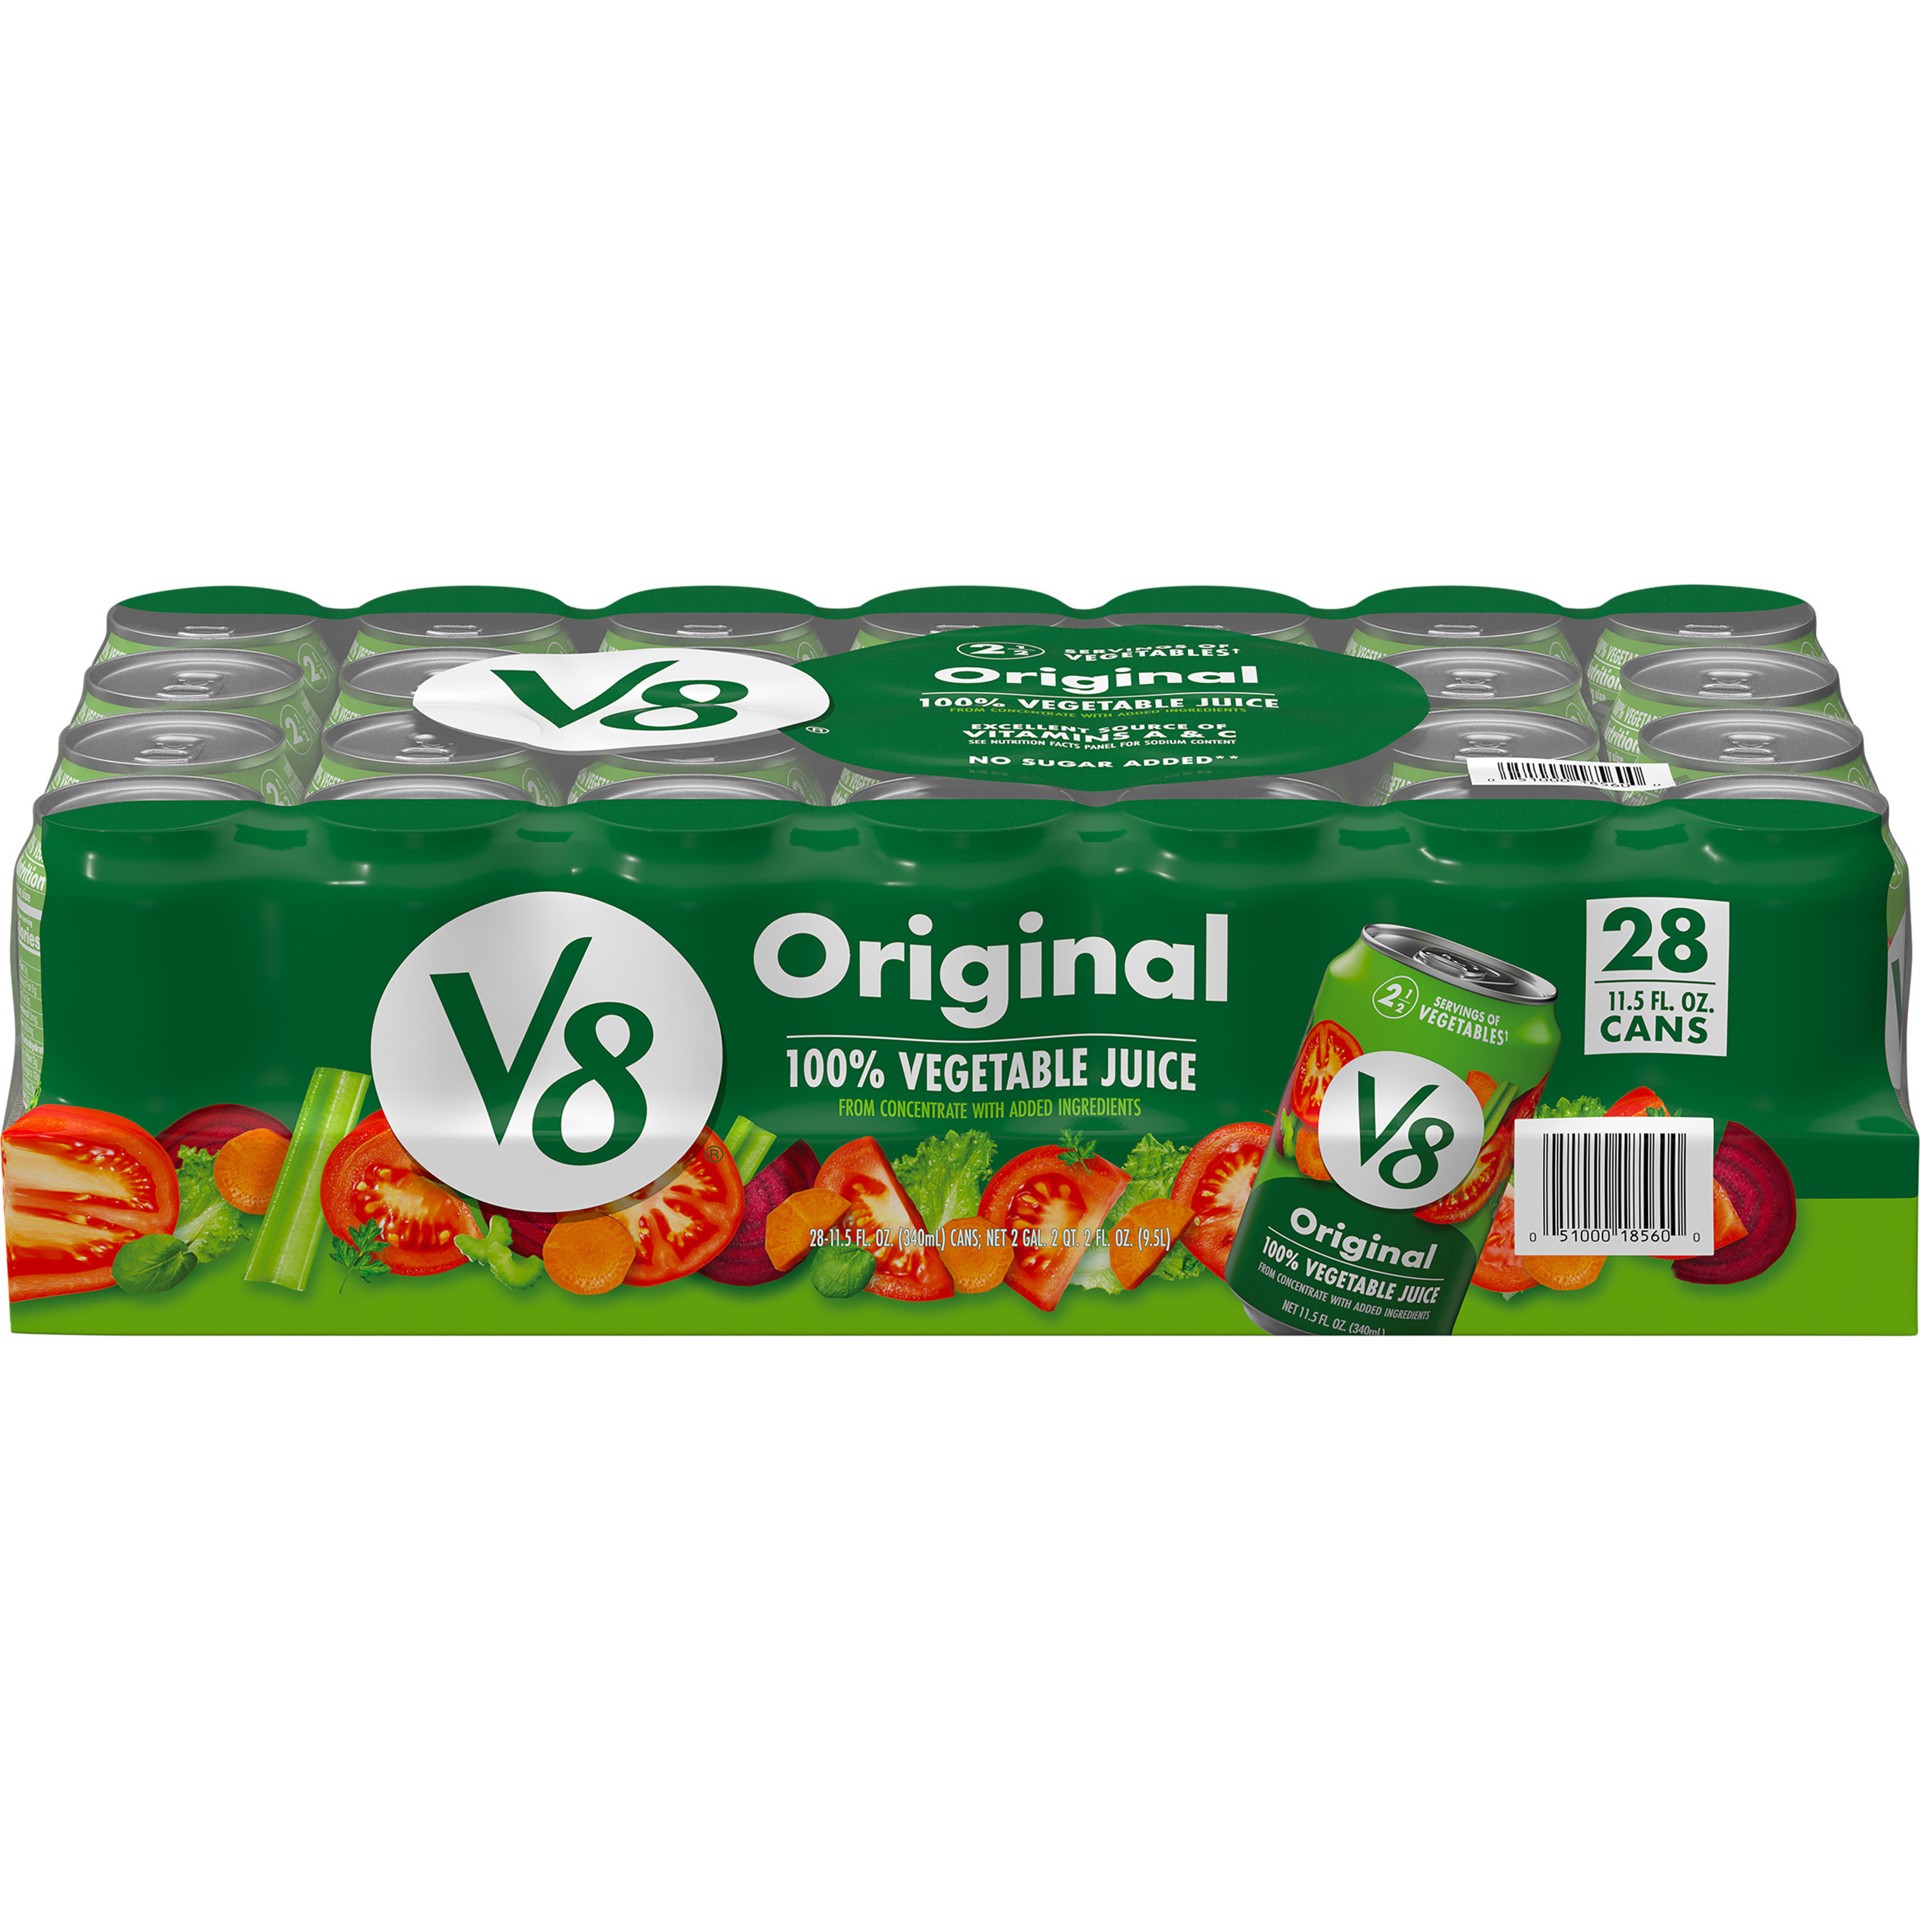 slide 1 of 1, V8 Original 100% Vegetable Juice, 11.5 fl oz Can (28 Pack), 322 oz